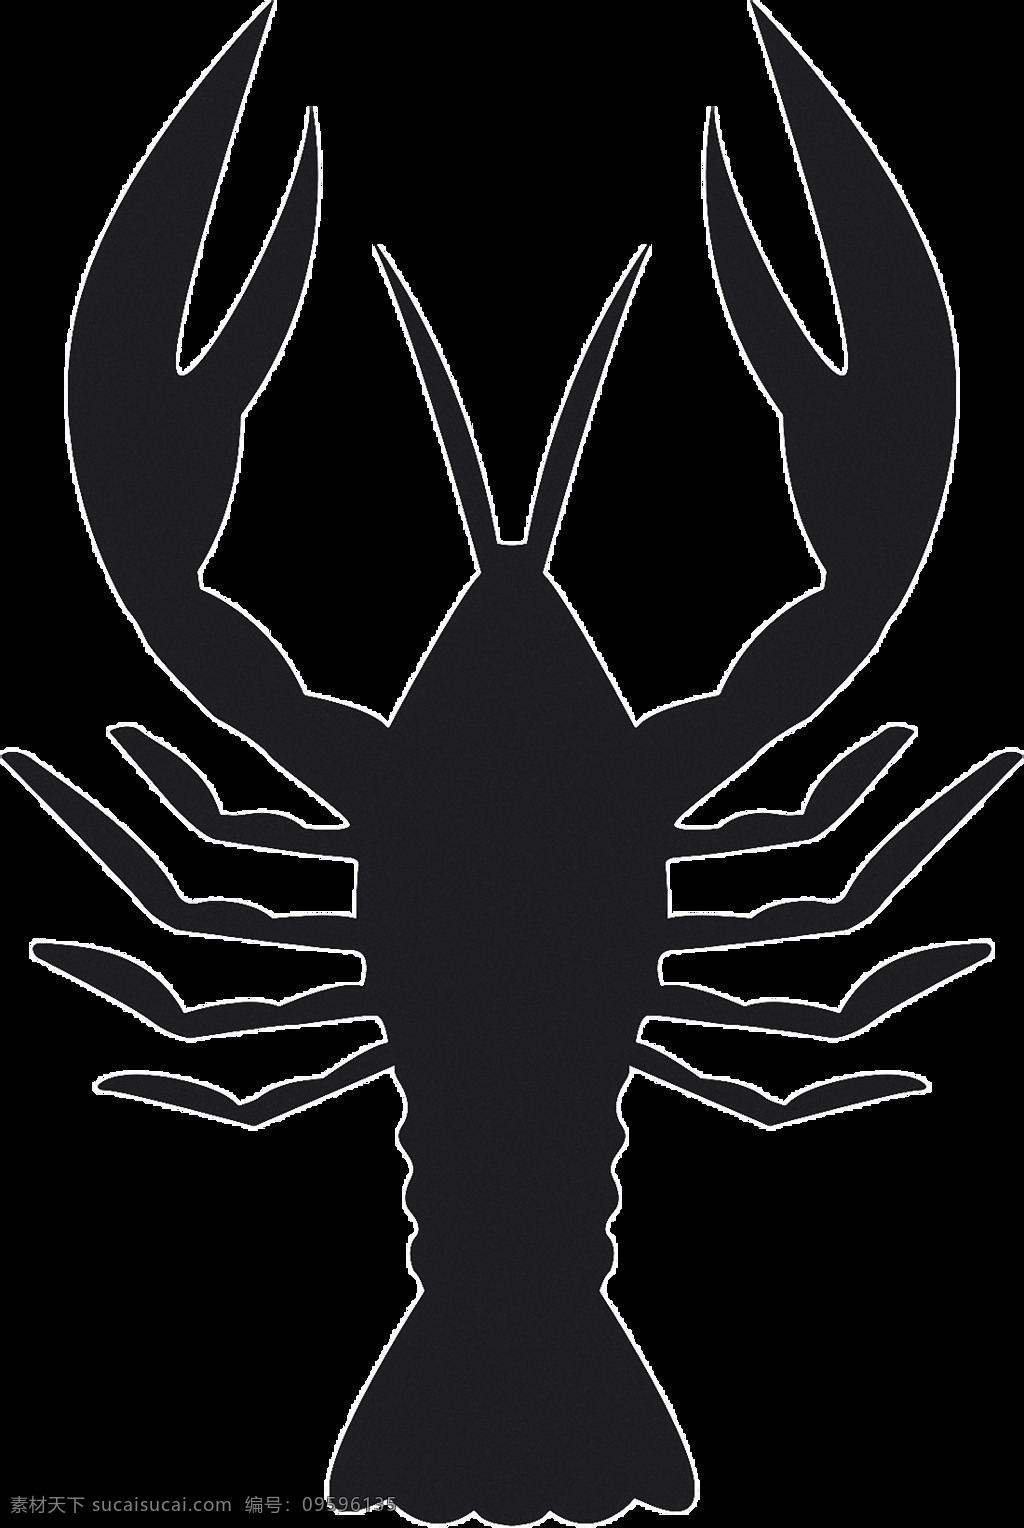 黑色 龙虾 蟹 剪影 免 抠 透明 图 层 巨蟹座插画 巨蟹座符号 巨蟹座创意图 巨蟹座 符号 标志 logo 十二星座图 十二星座标志 十二星座符号